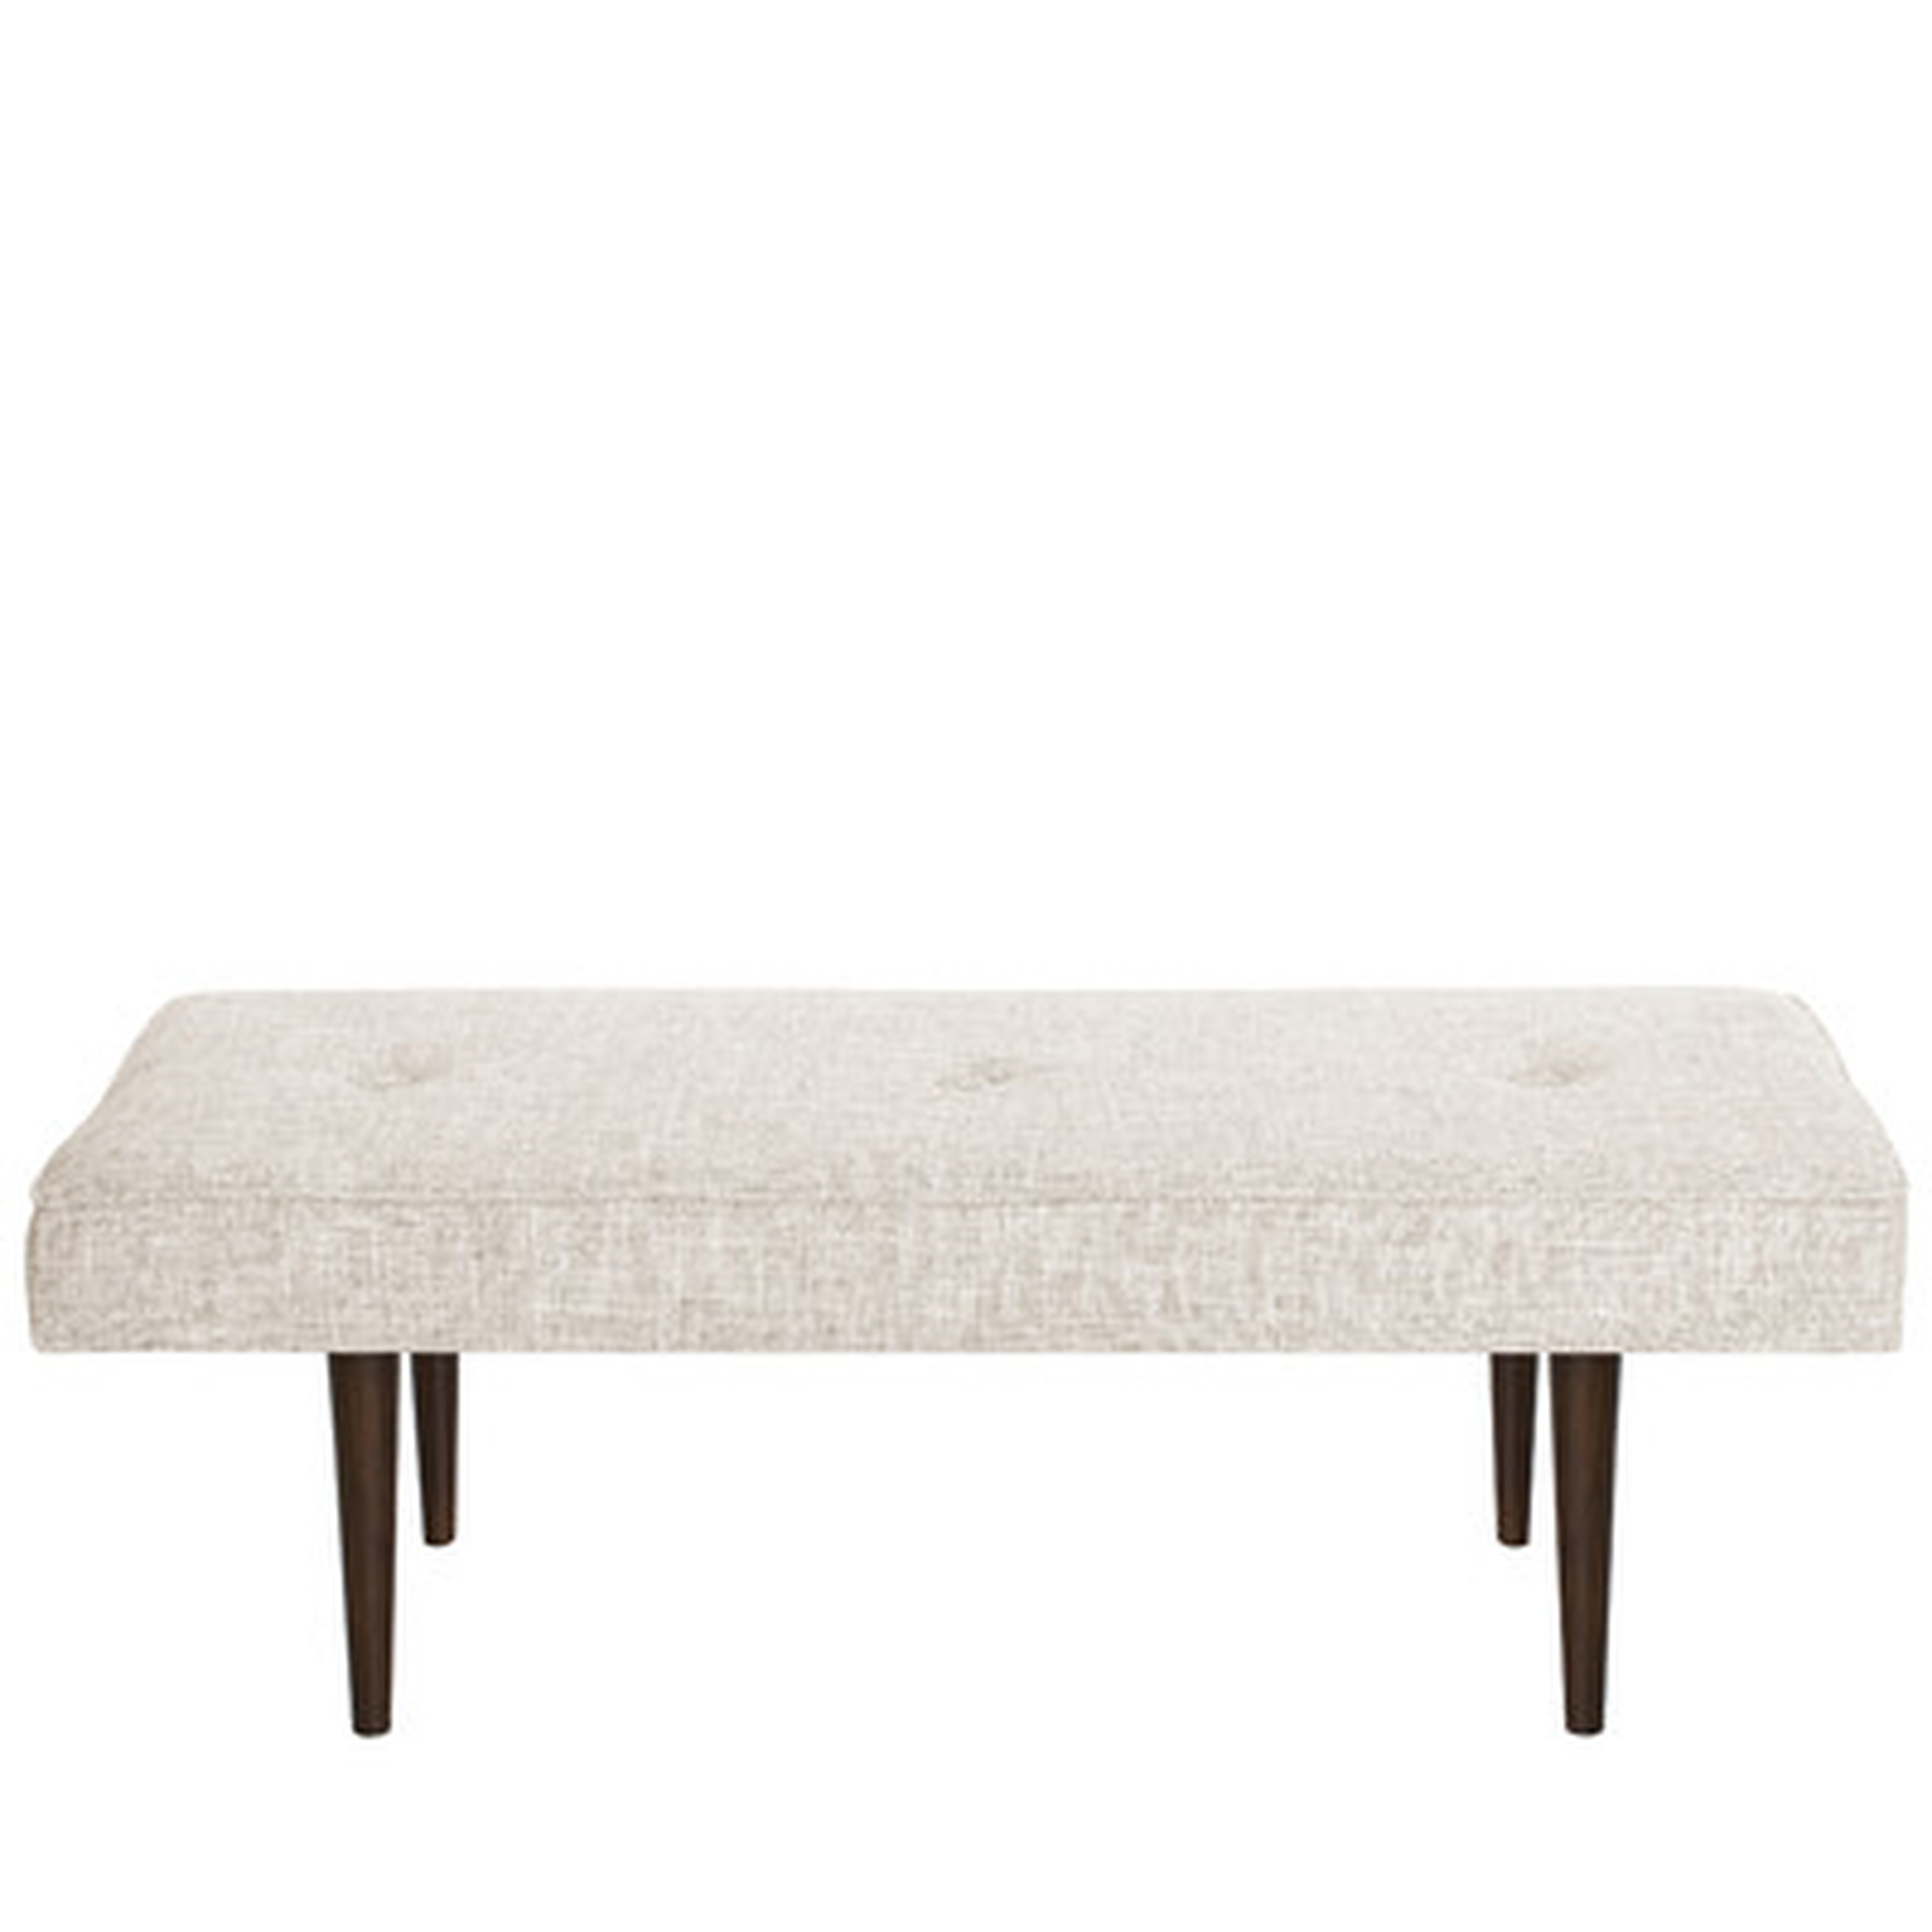 Foweler Tufted Woven Linen Upholstered Bench - AllModern